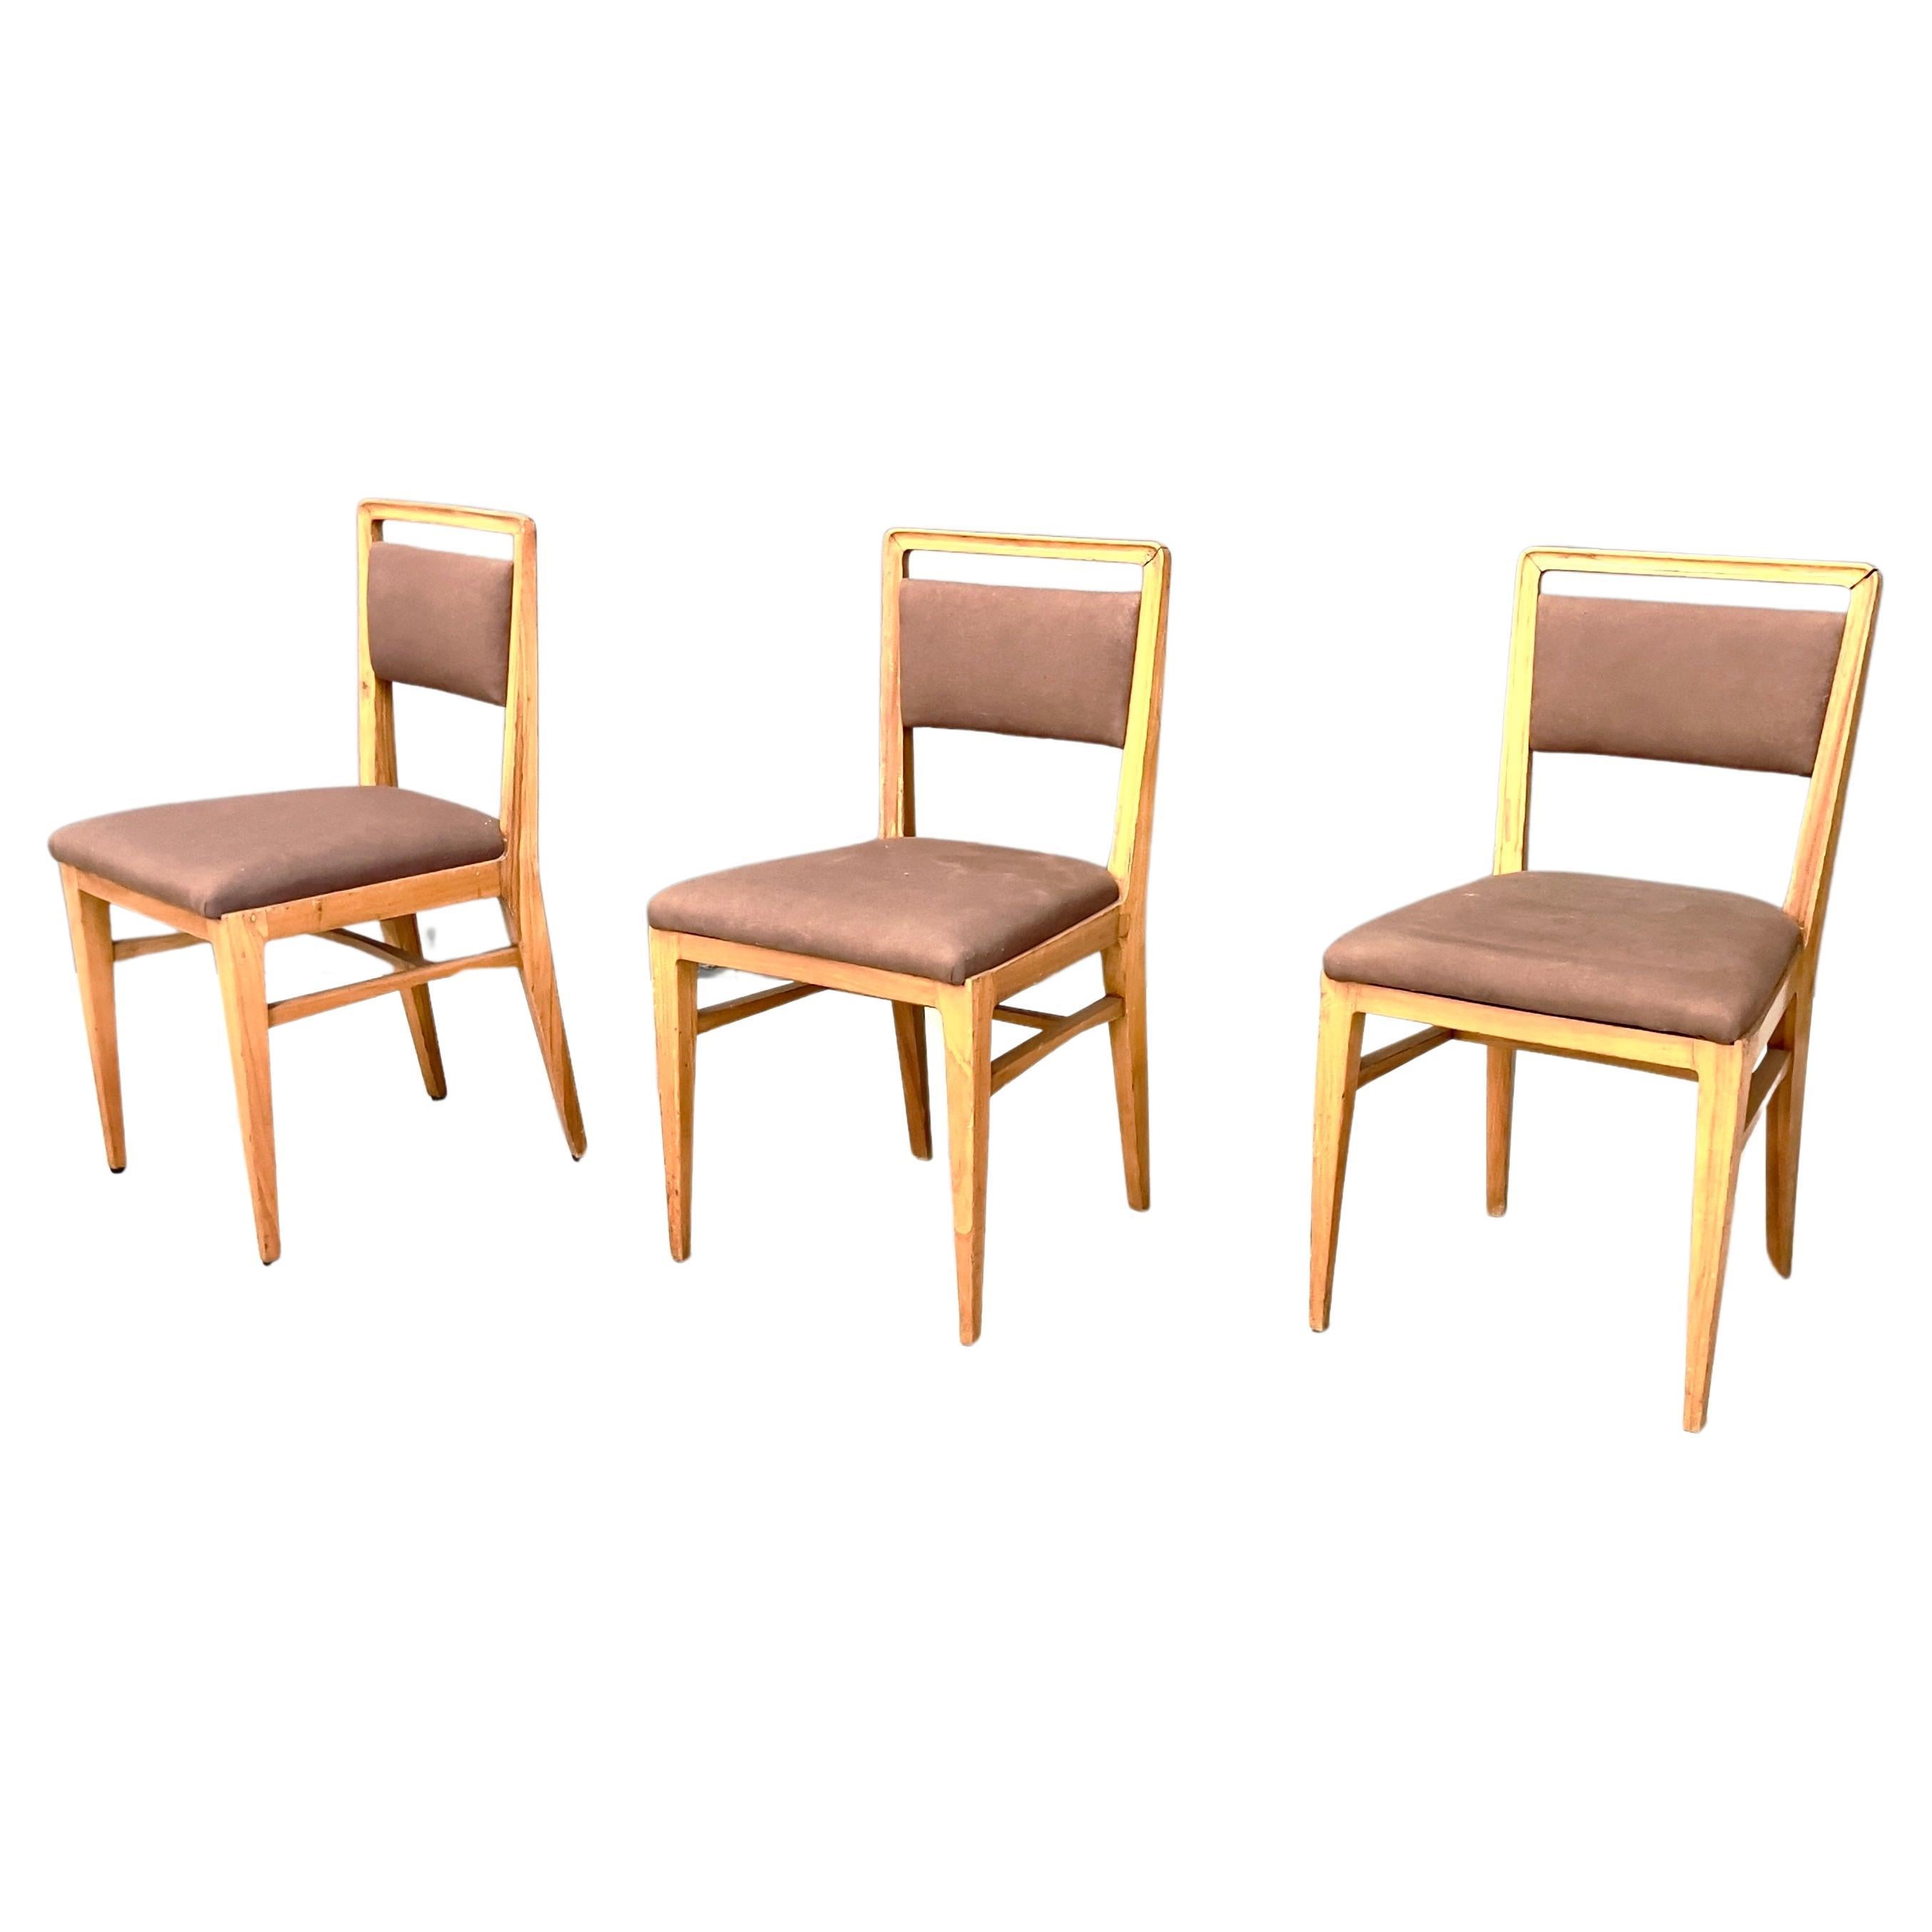 Drei Stühle, Gio Ponti zugeschrieben, 1950er Jahre